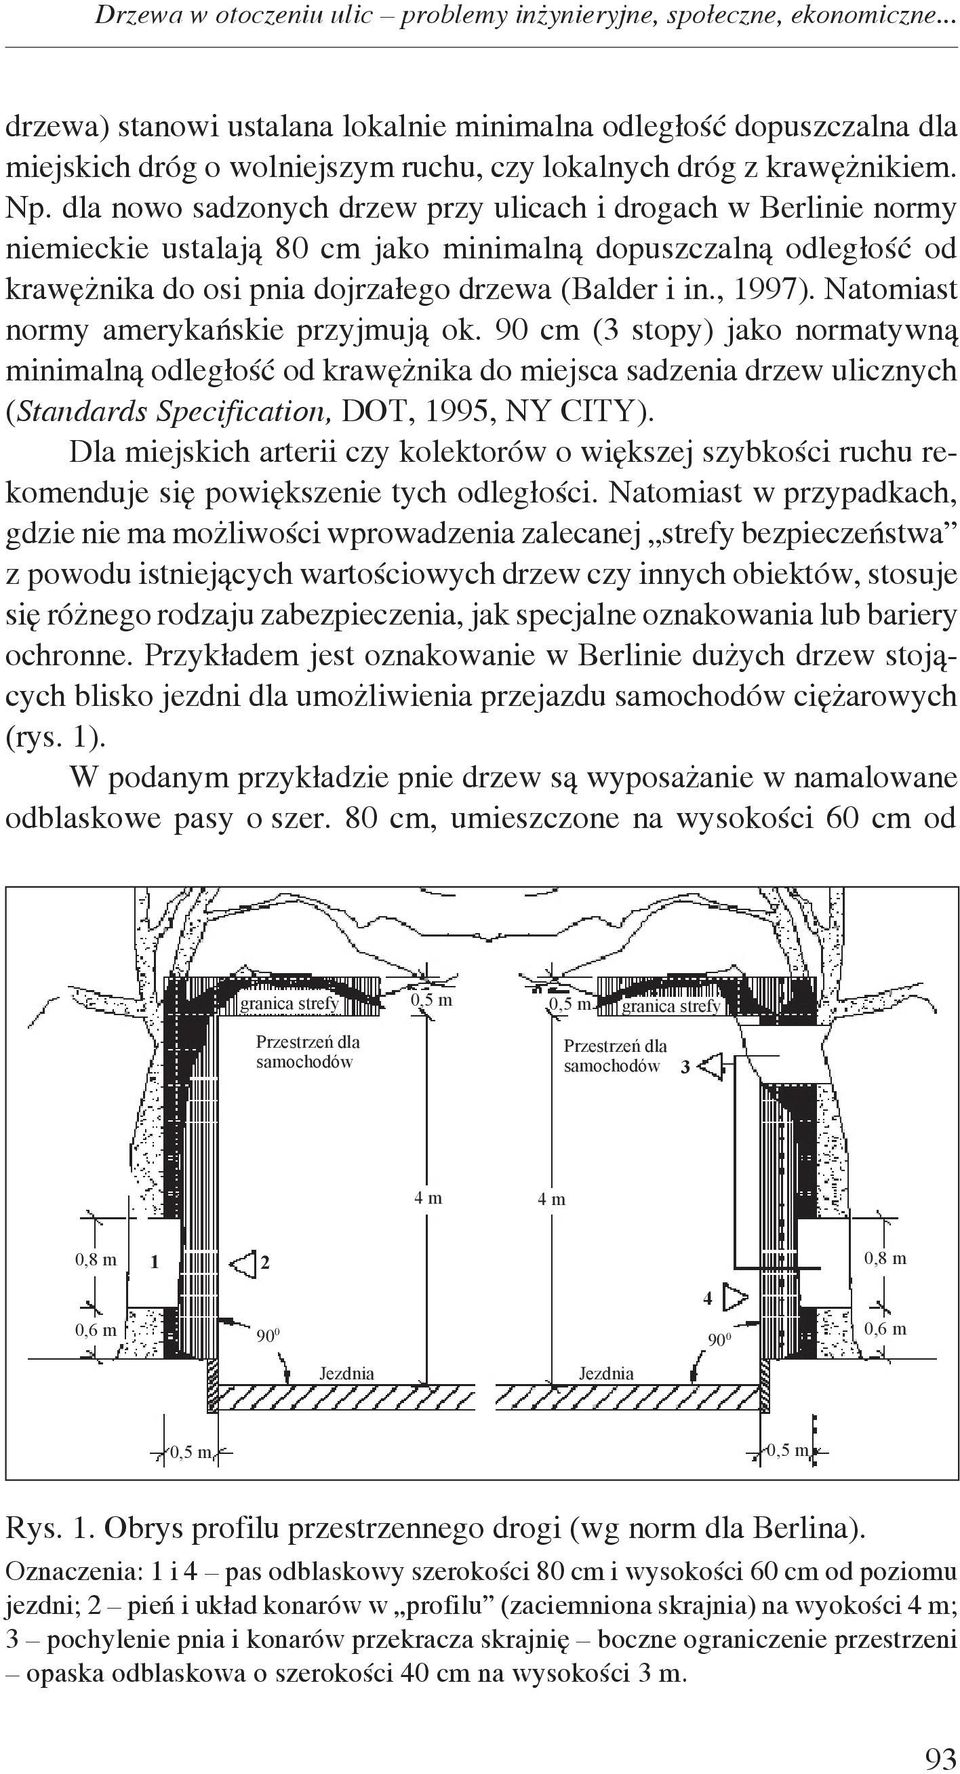 dla nowo sadzonych drzew przy ulicach i drogach w Berlinie normy niemieckie ustalają 80 cm jako minimalną dopuszczalną odległość od krawężnika do osi pnia dojrzałego drzewa (Balder i in., 1997).